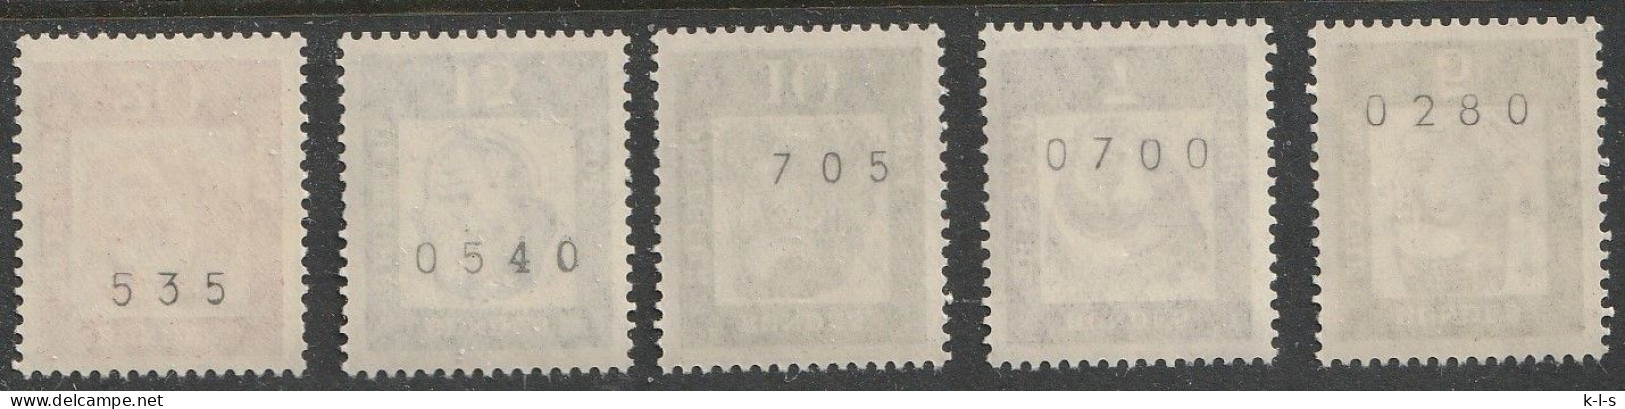 BRD: 1961, Rollenmarken: 5 Versch. Werte Mit  Fluoreszenz, Freimarken: Bedeutende Deutsche,   **/MNH - Roulettes